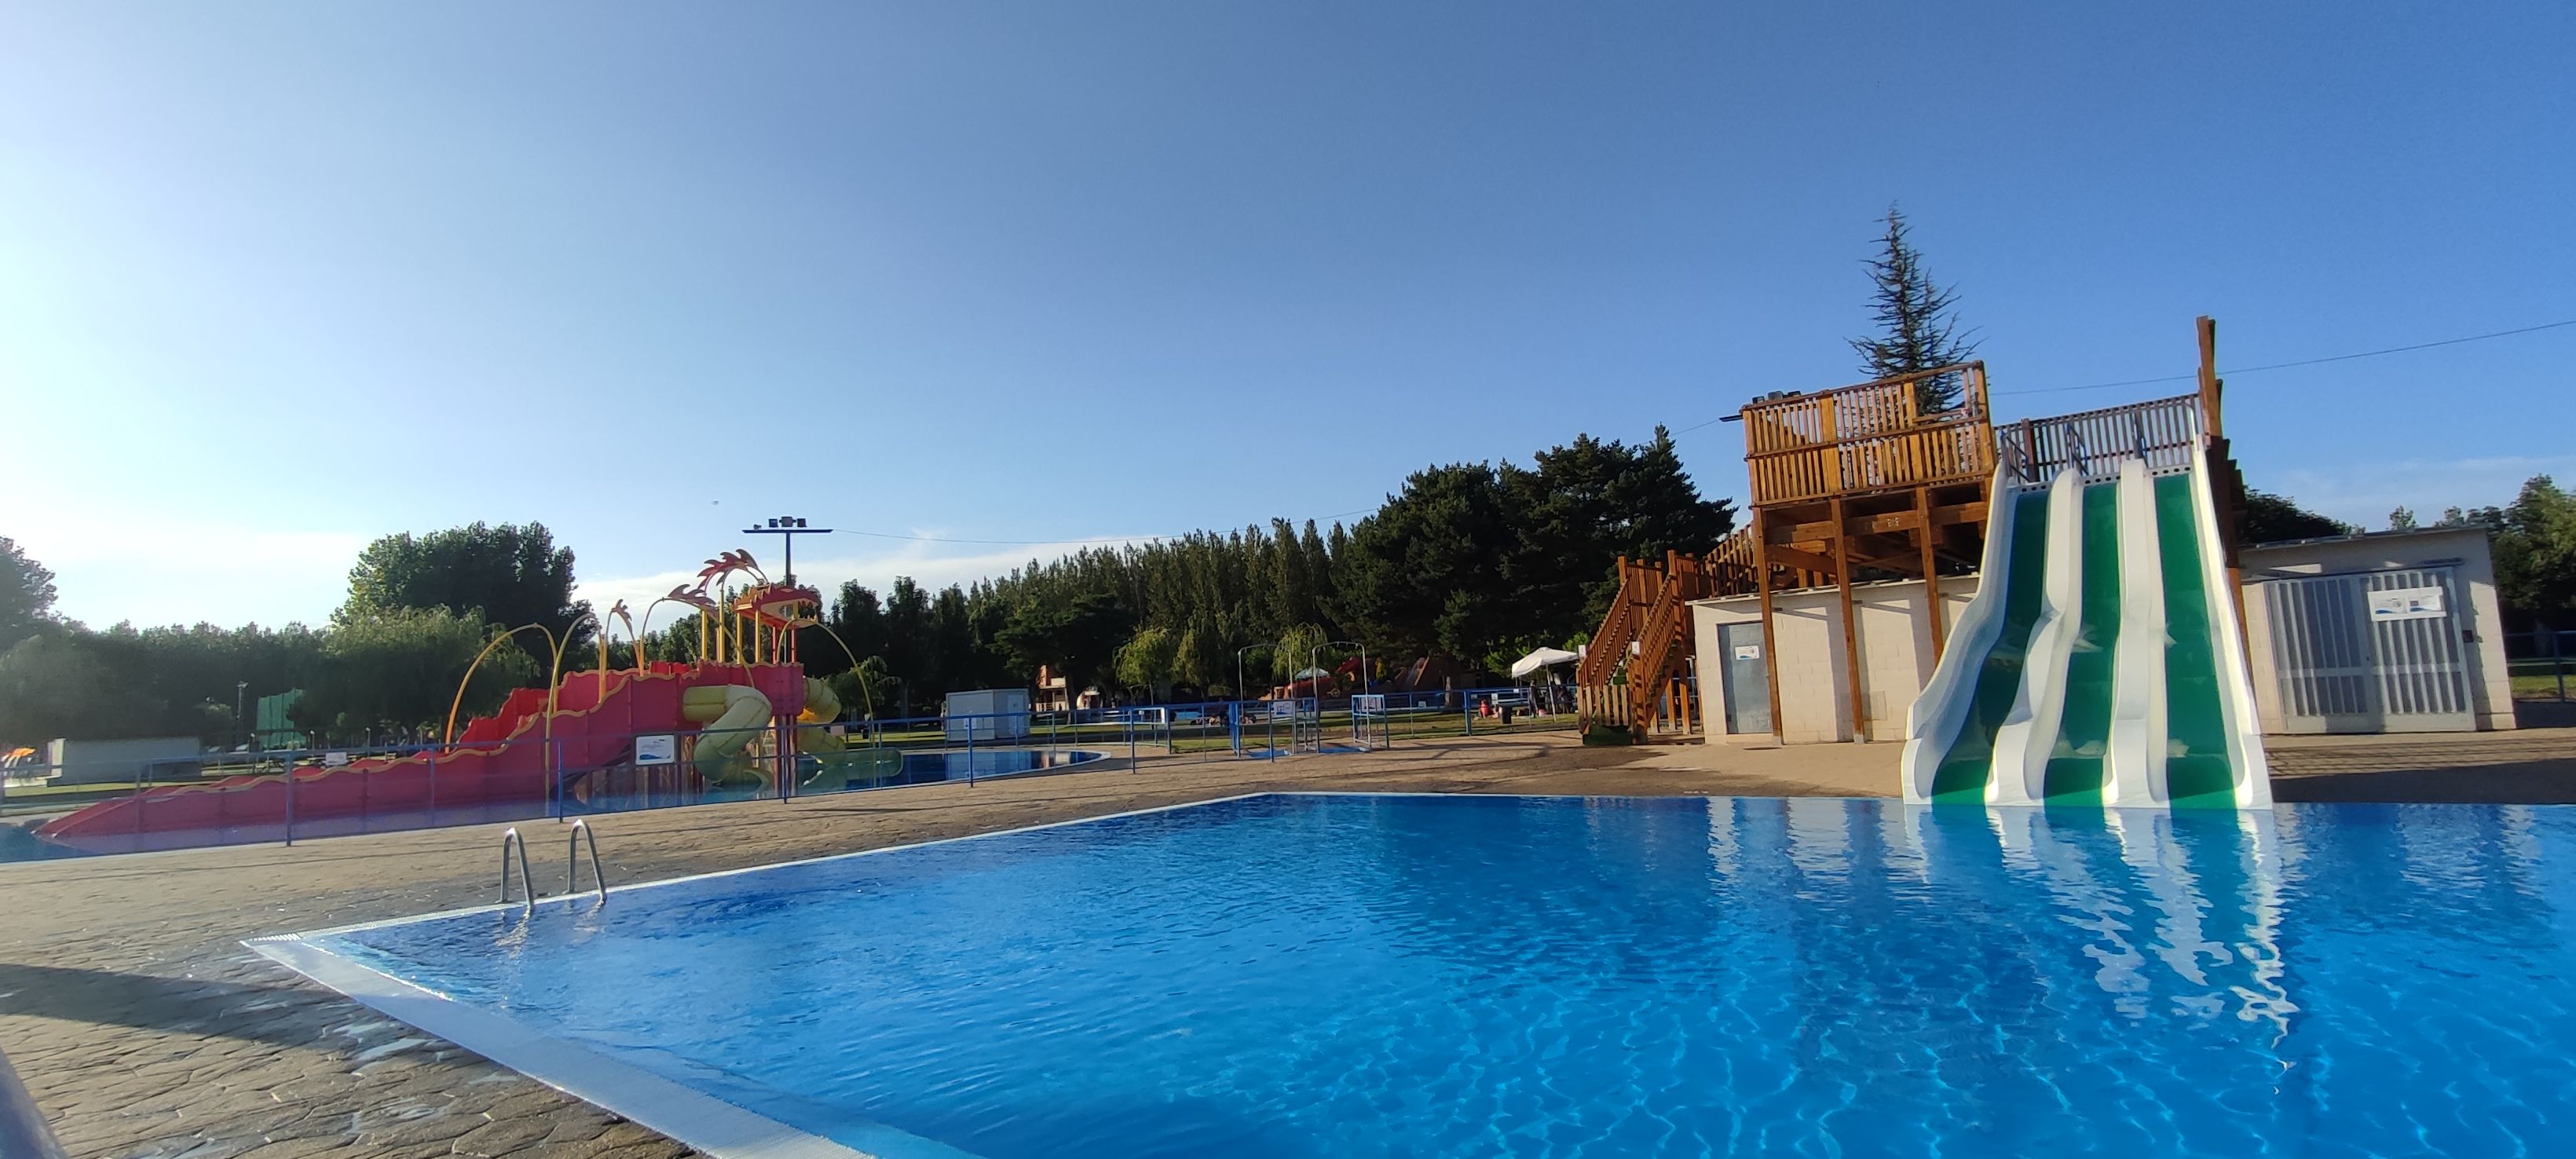 Las piscinas municipales de Valencia de Don Juan ya están listas para ser abiertas. | L.N.C.